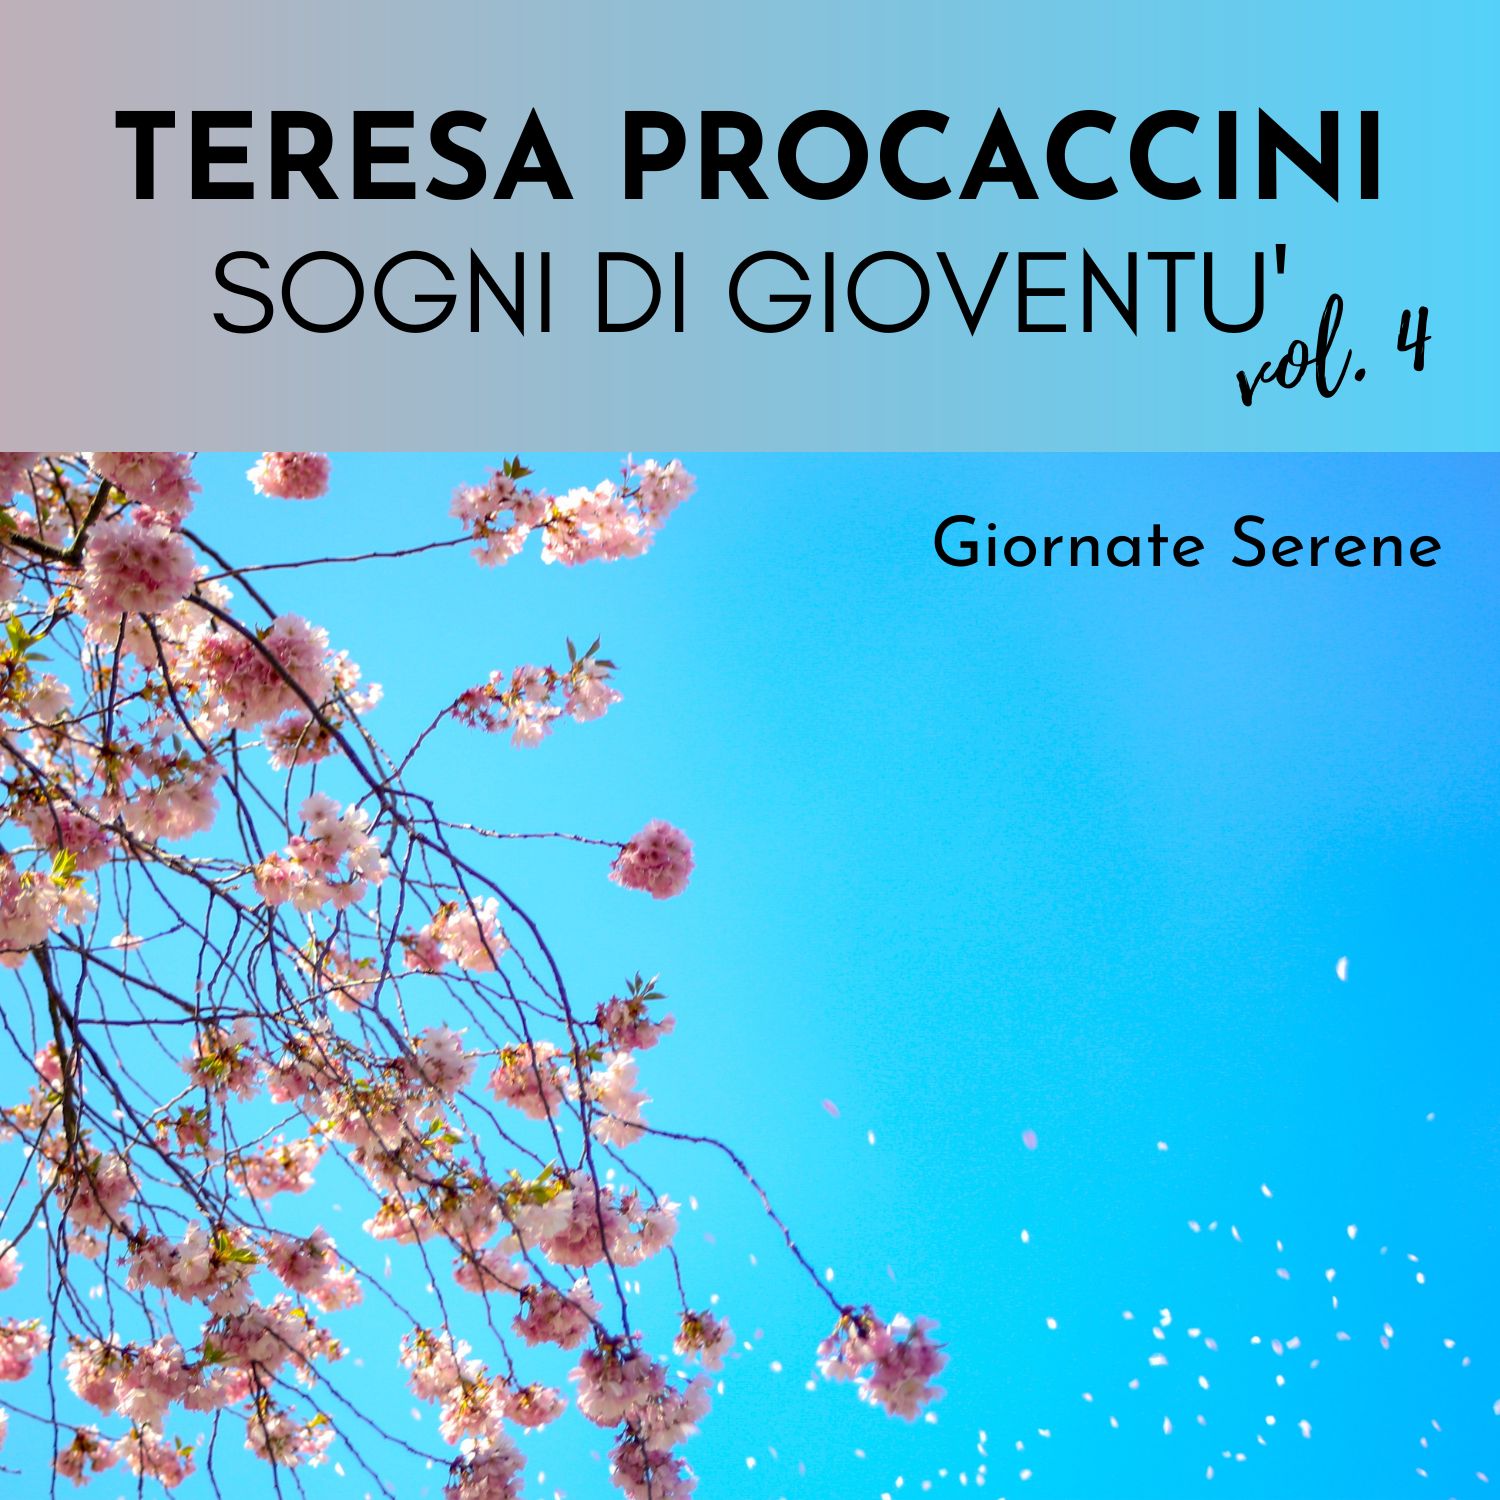 Teresa Procaccini: Sogni di gioventù, Vol. 4 (Giornate serene)